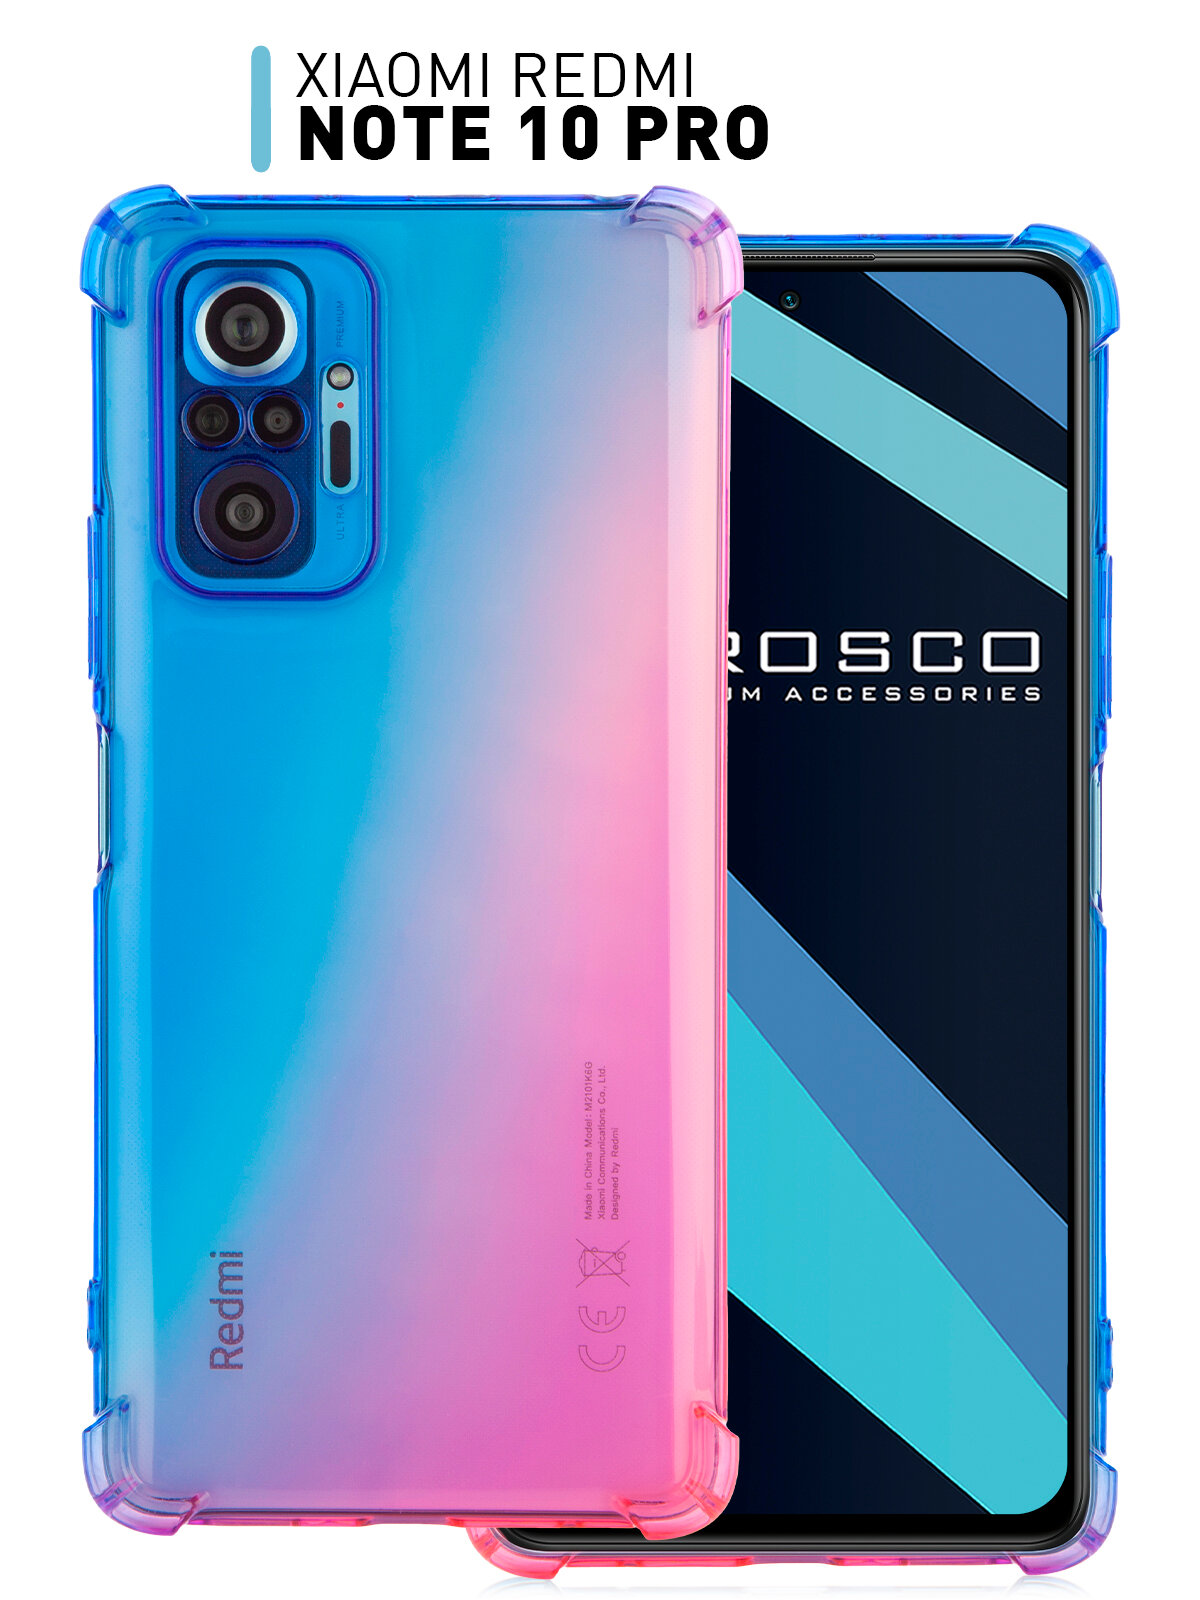 Противоударный силиконовый чехол ROSCO для Xiaomi Redmi Note 10 Pro (Ксиаоми Сяоми Редми Ноут 10 Про) усиленный защита камер прозрачный сине-розовый